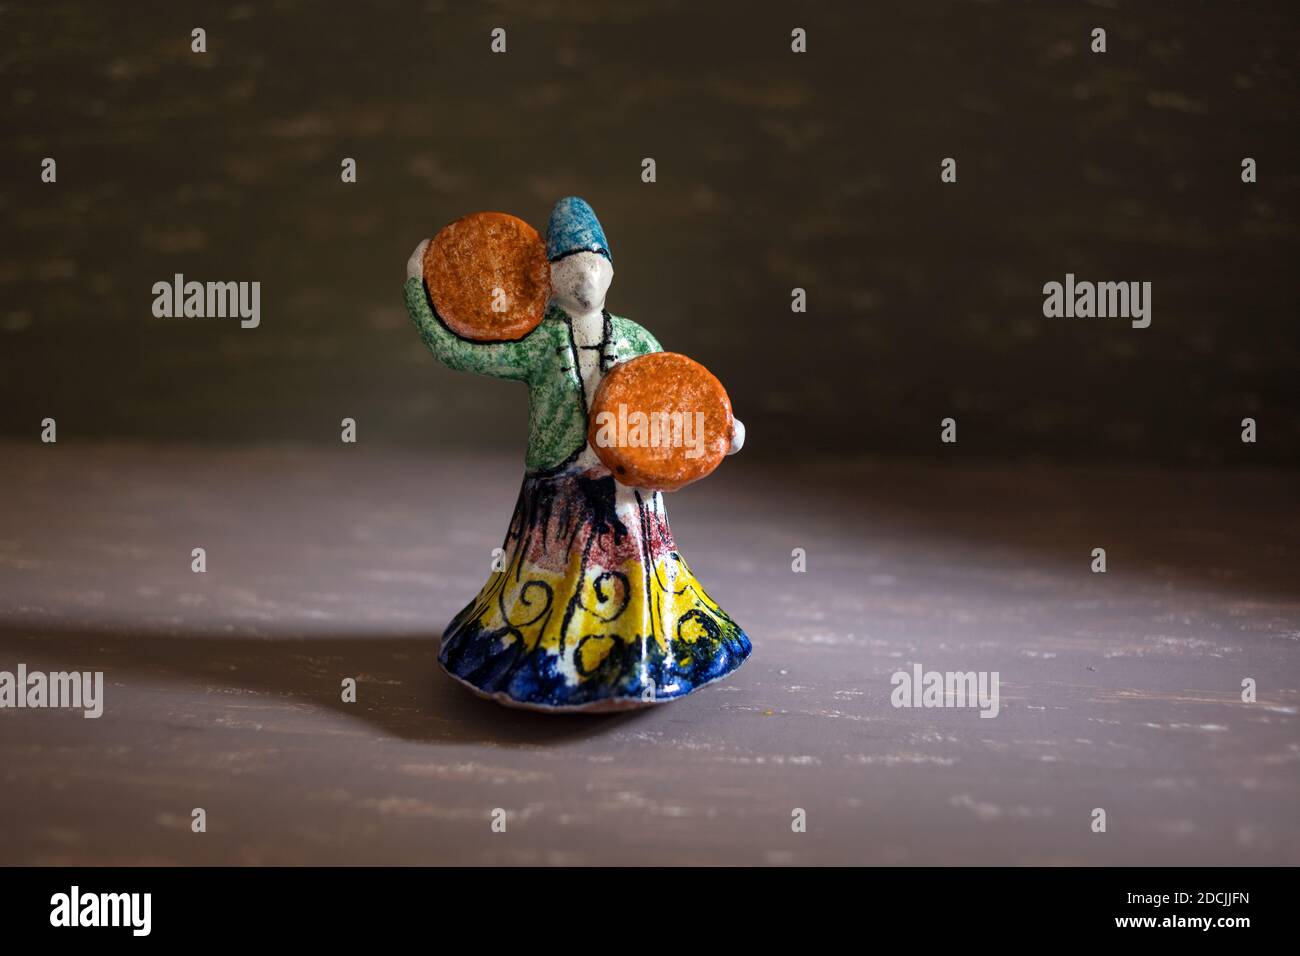 Le Caire, novembre 10.Poterie statue colorée de danse dervish sur fond de couleurs différentes avec effet de lumière dramatique. Etude symbolique de mevlevi myst Banque D'Images